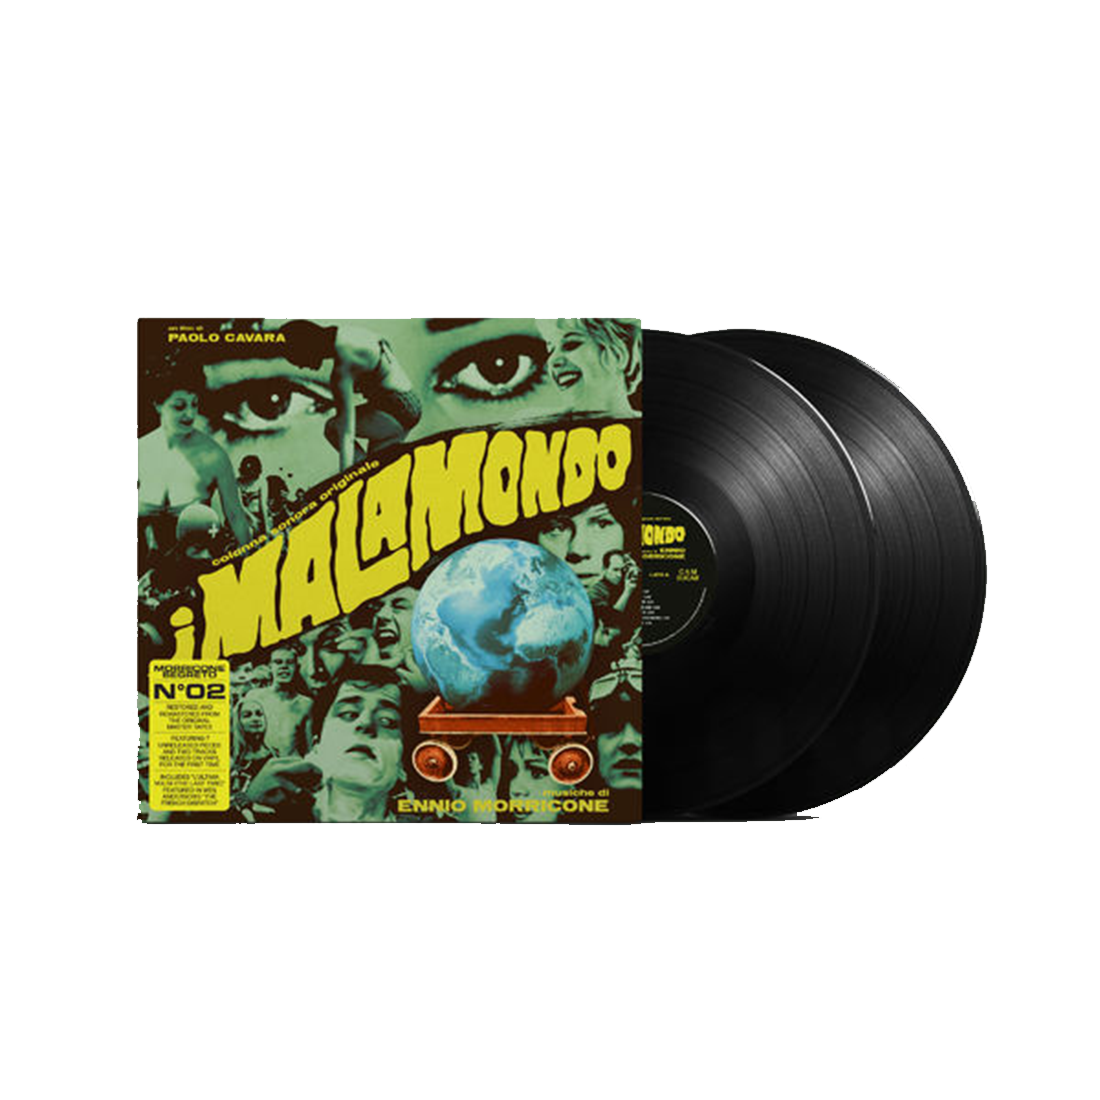 Ennio Morricone - I Malamondo: Vinyl 2LP